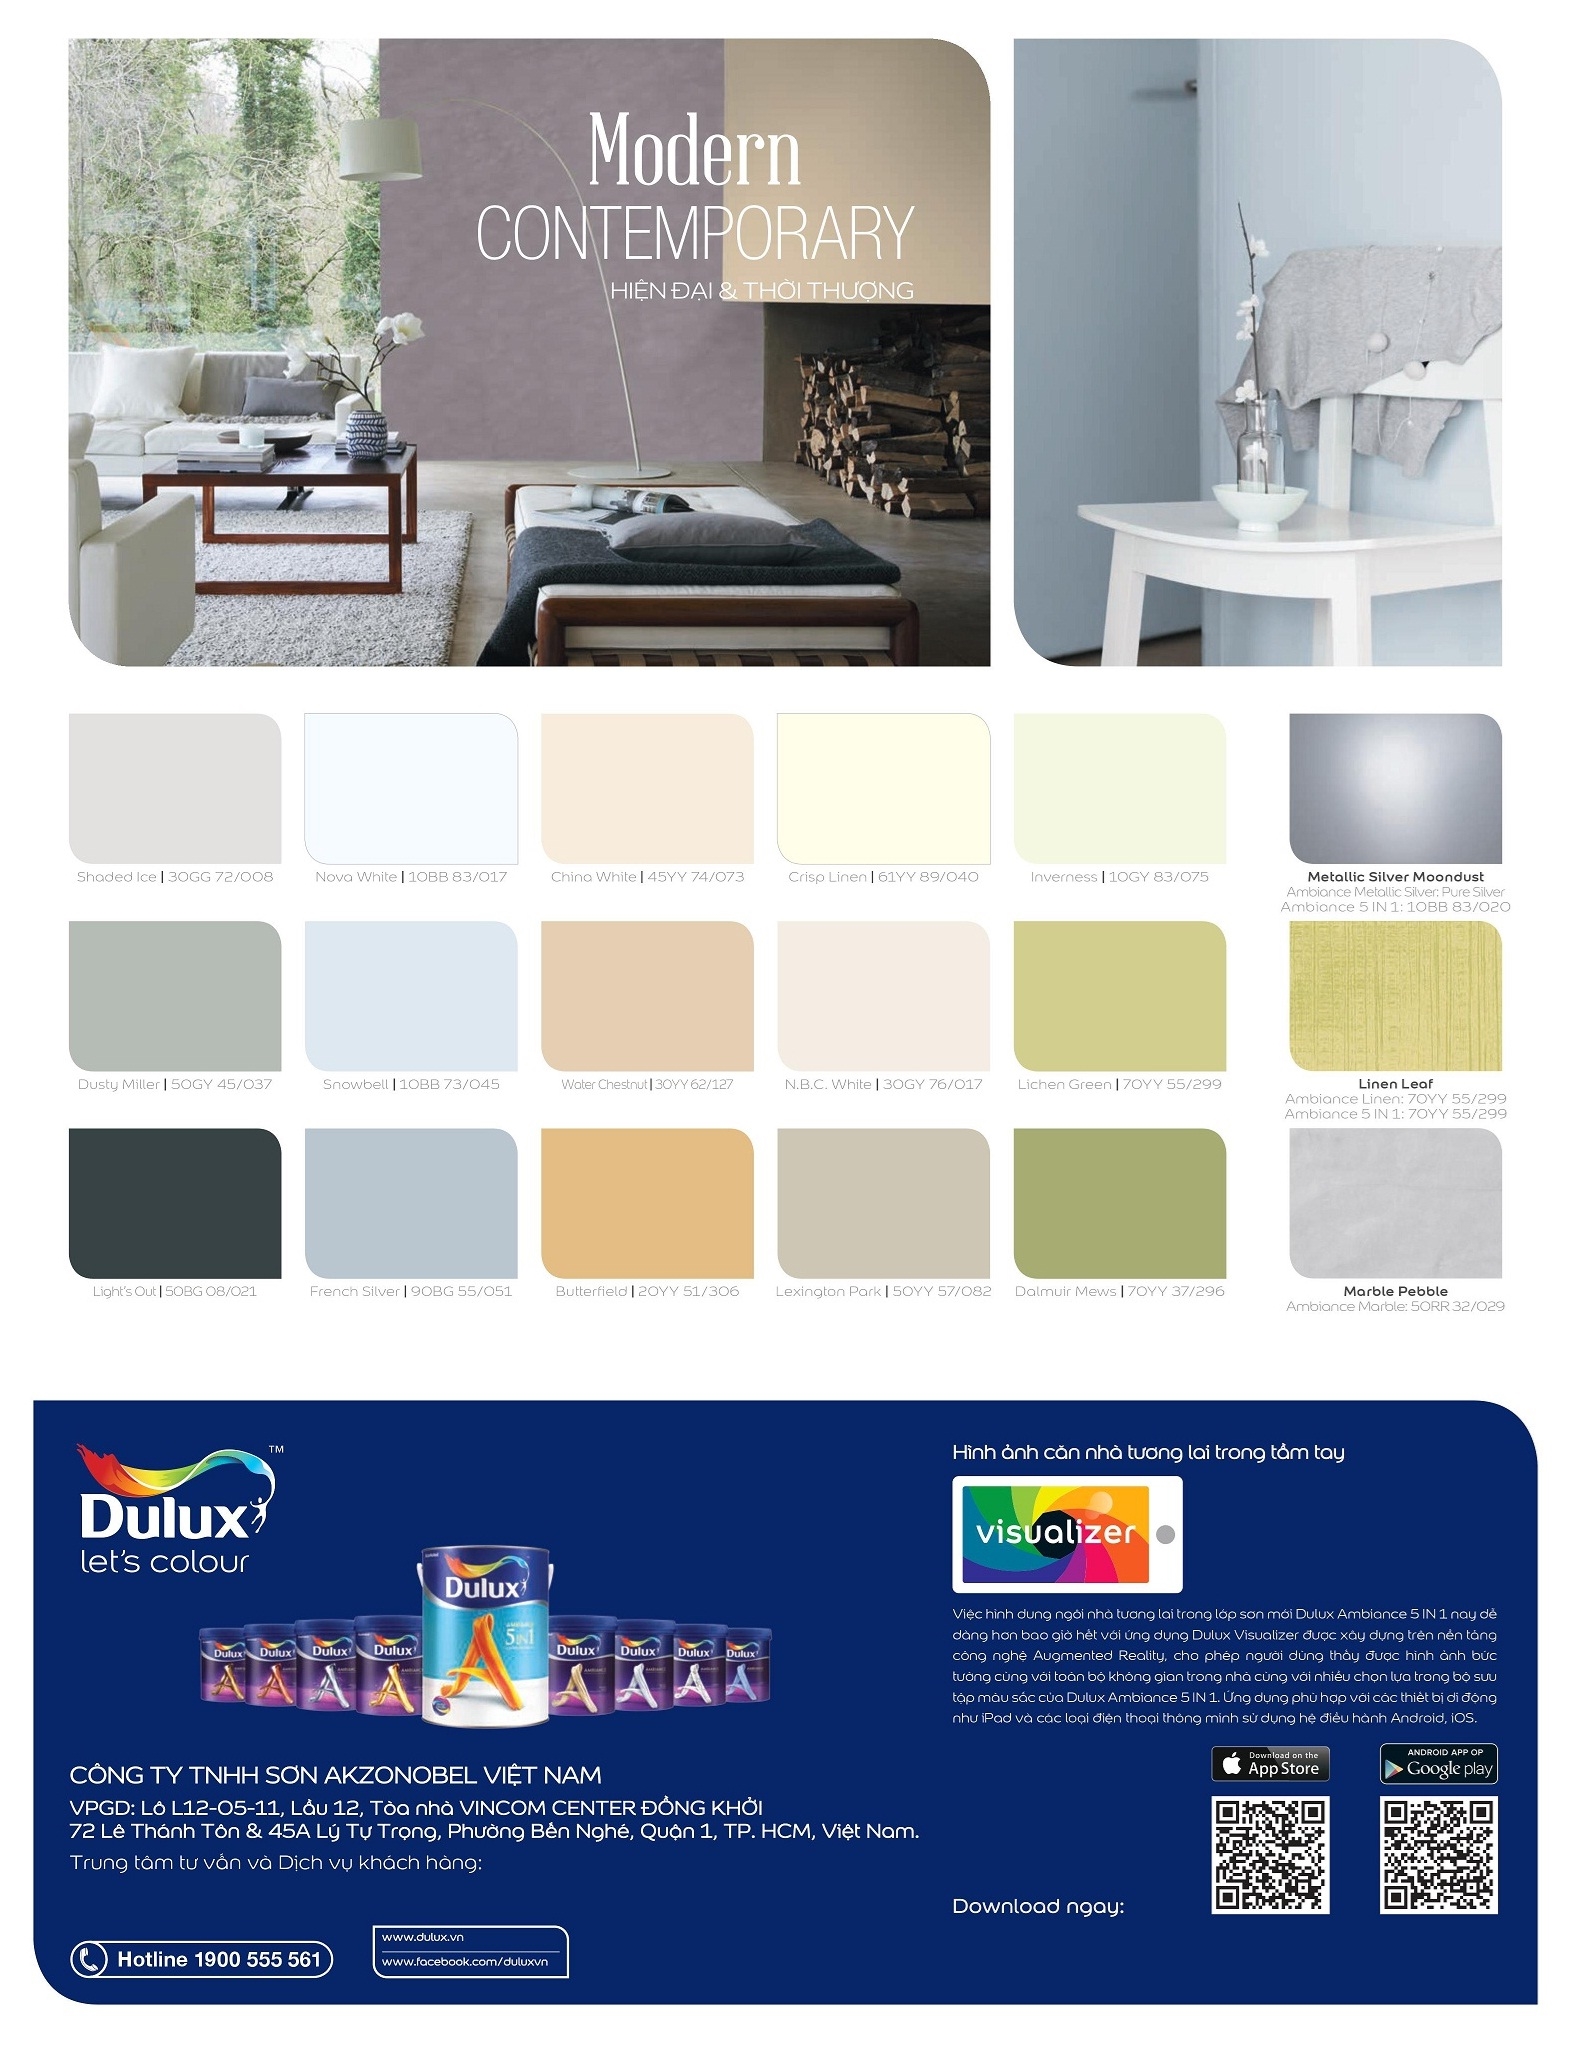 Bảng màu sơn Dulux trong và ngoài nhà